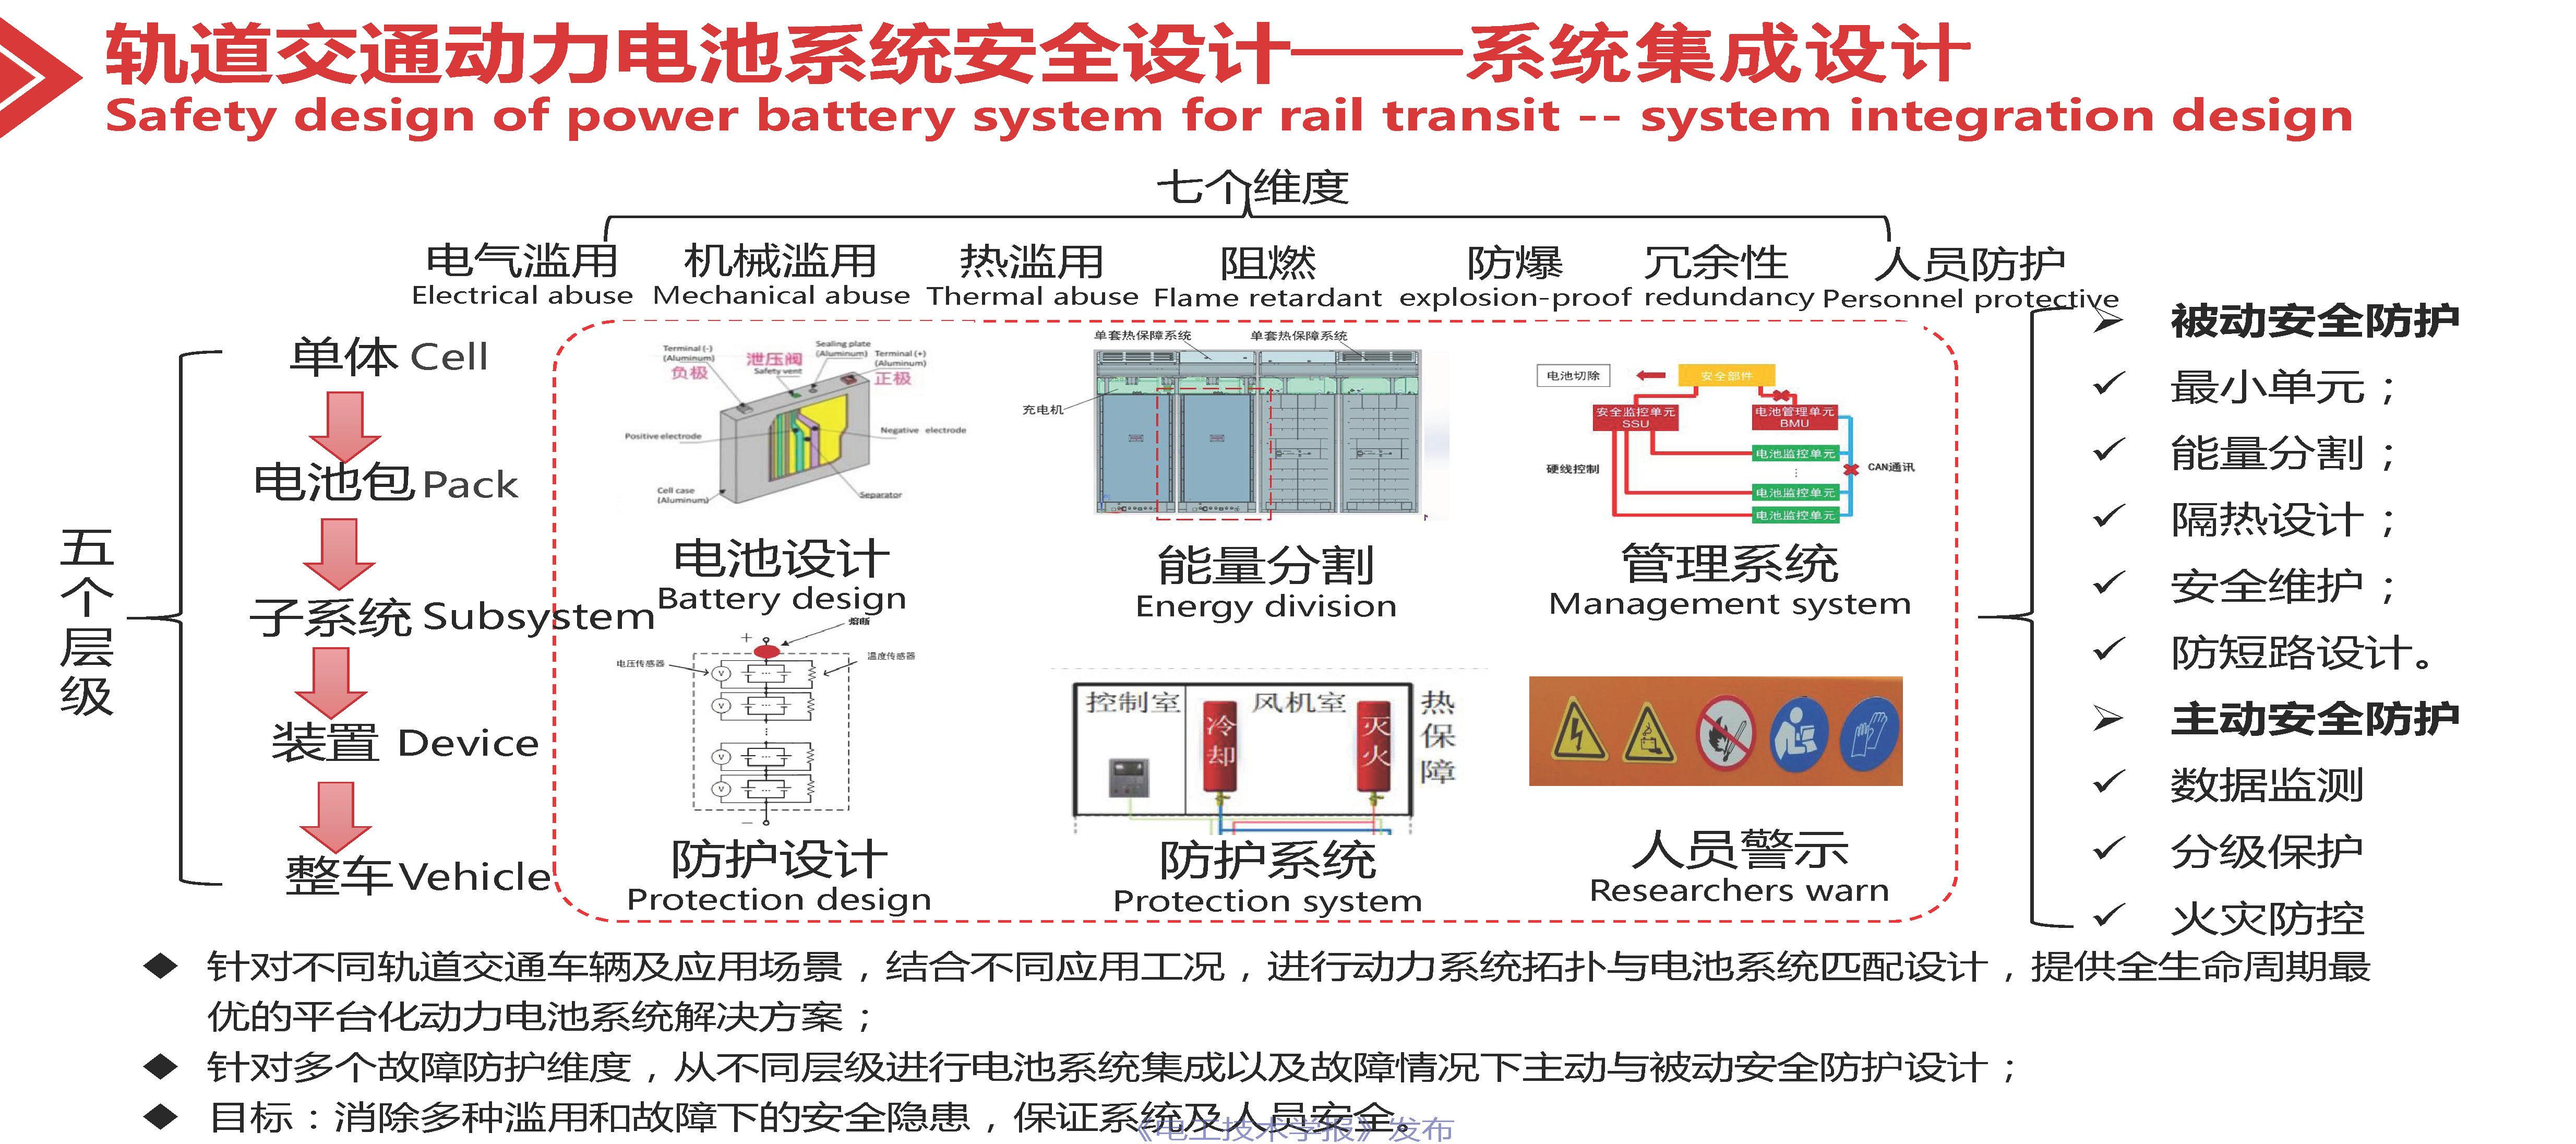 专家报告：轨道交通用高可靠性锂离子电池系统的技术进展